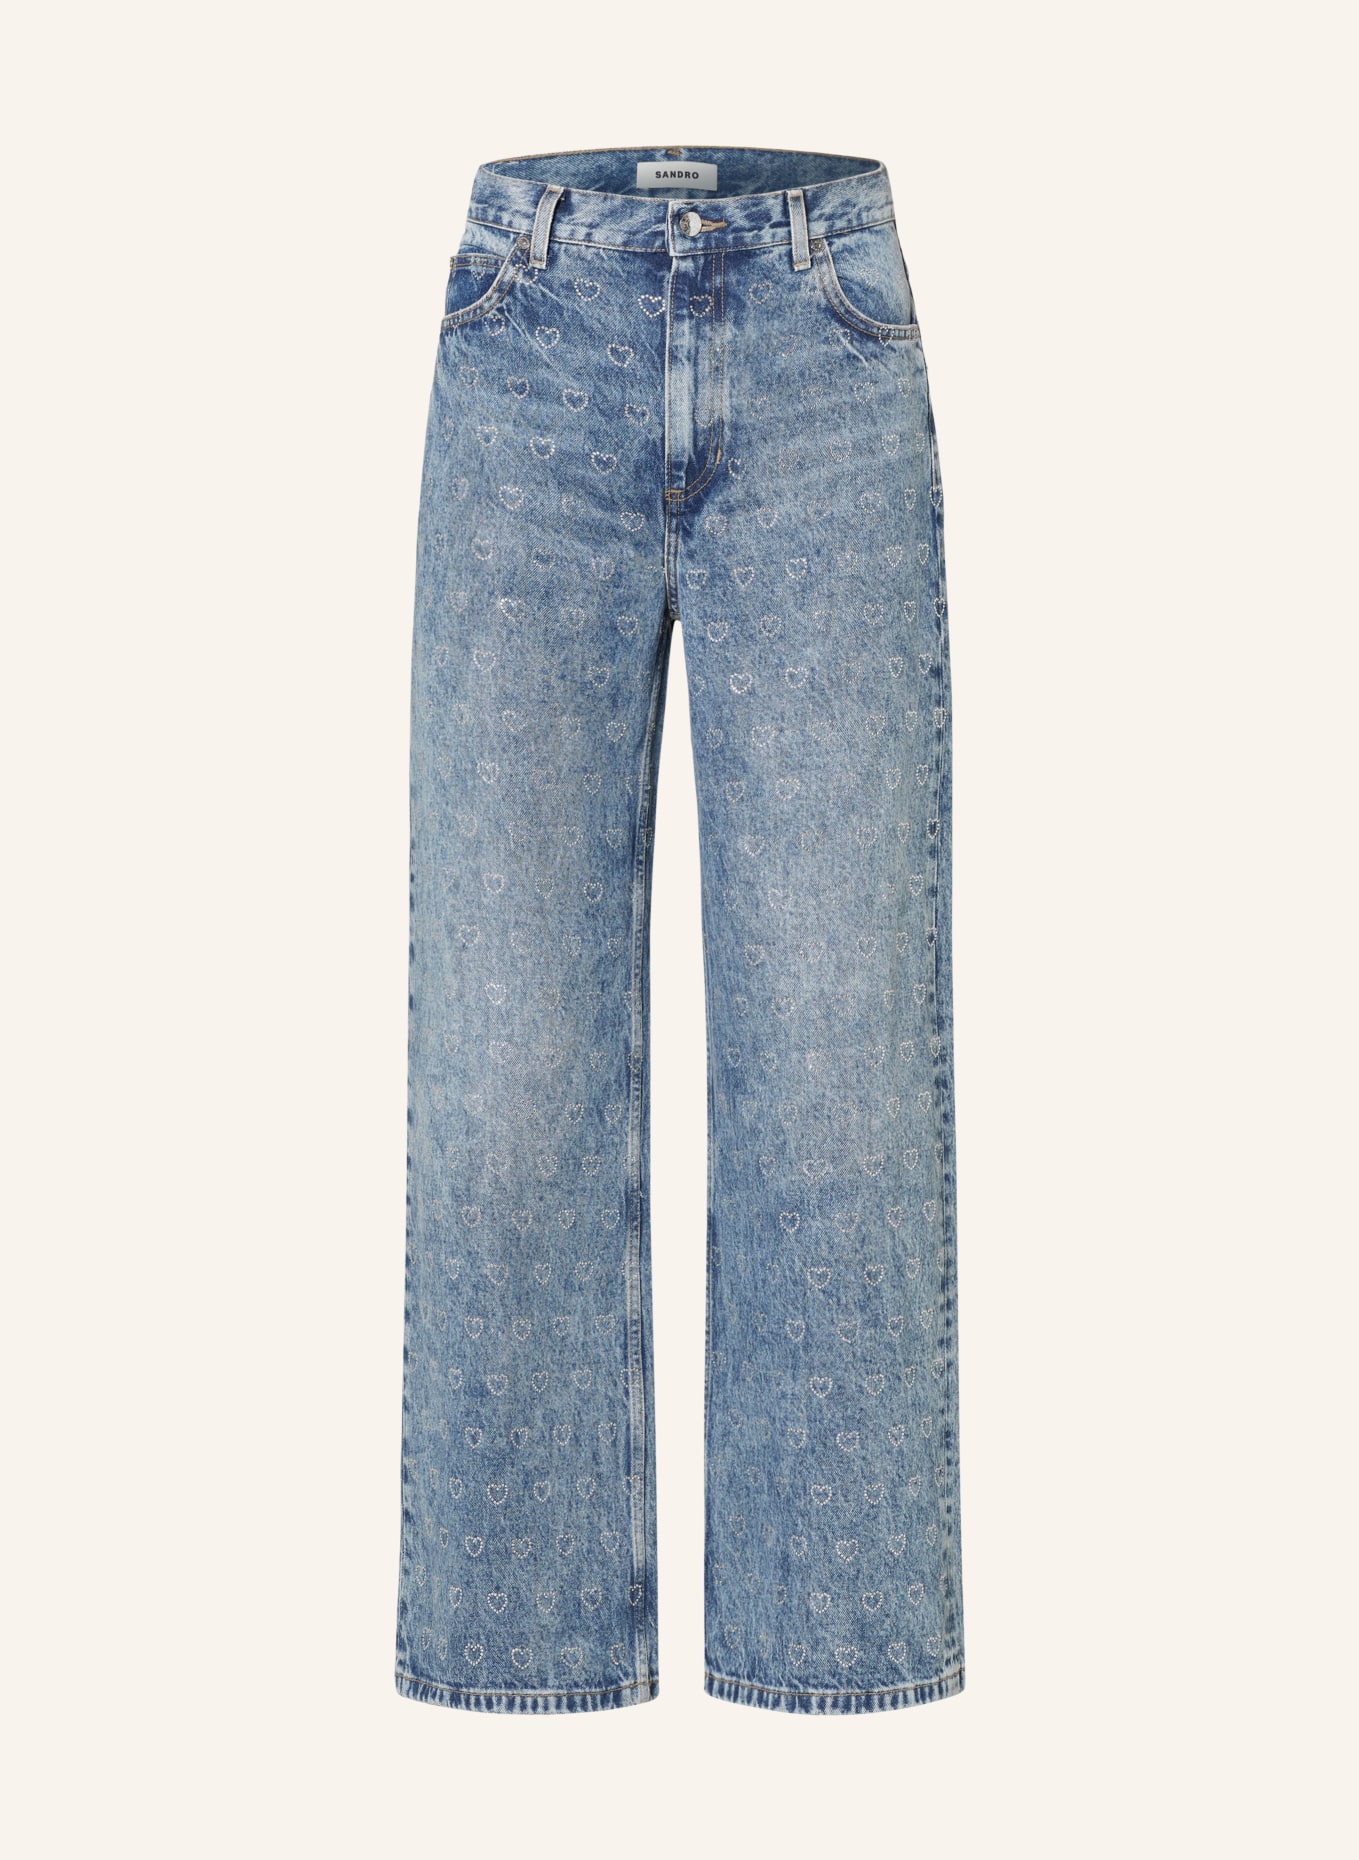 SANDRO Jeans mit Schmucksteinen, Farbe: 4785 BLUE JEAN (Bild 1)